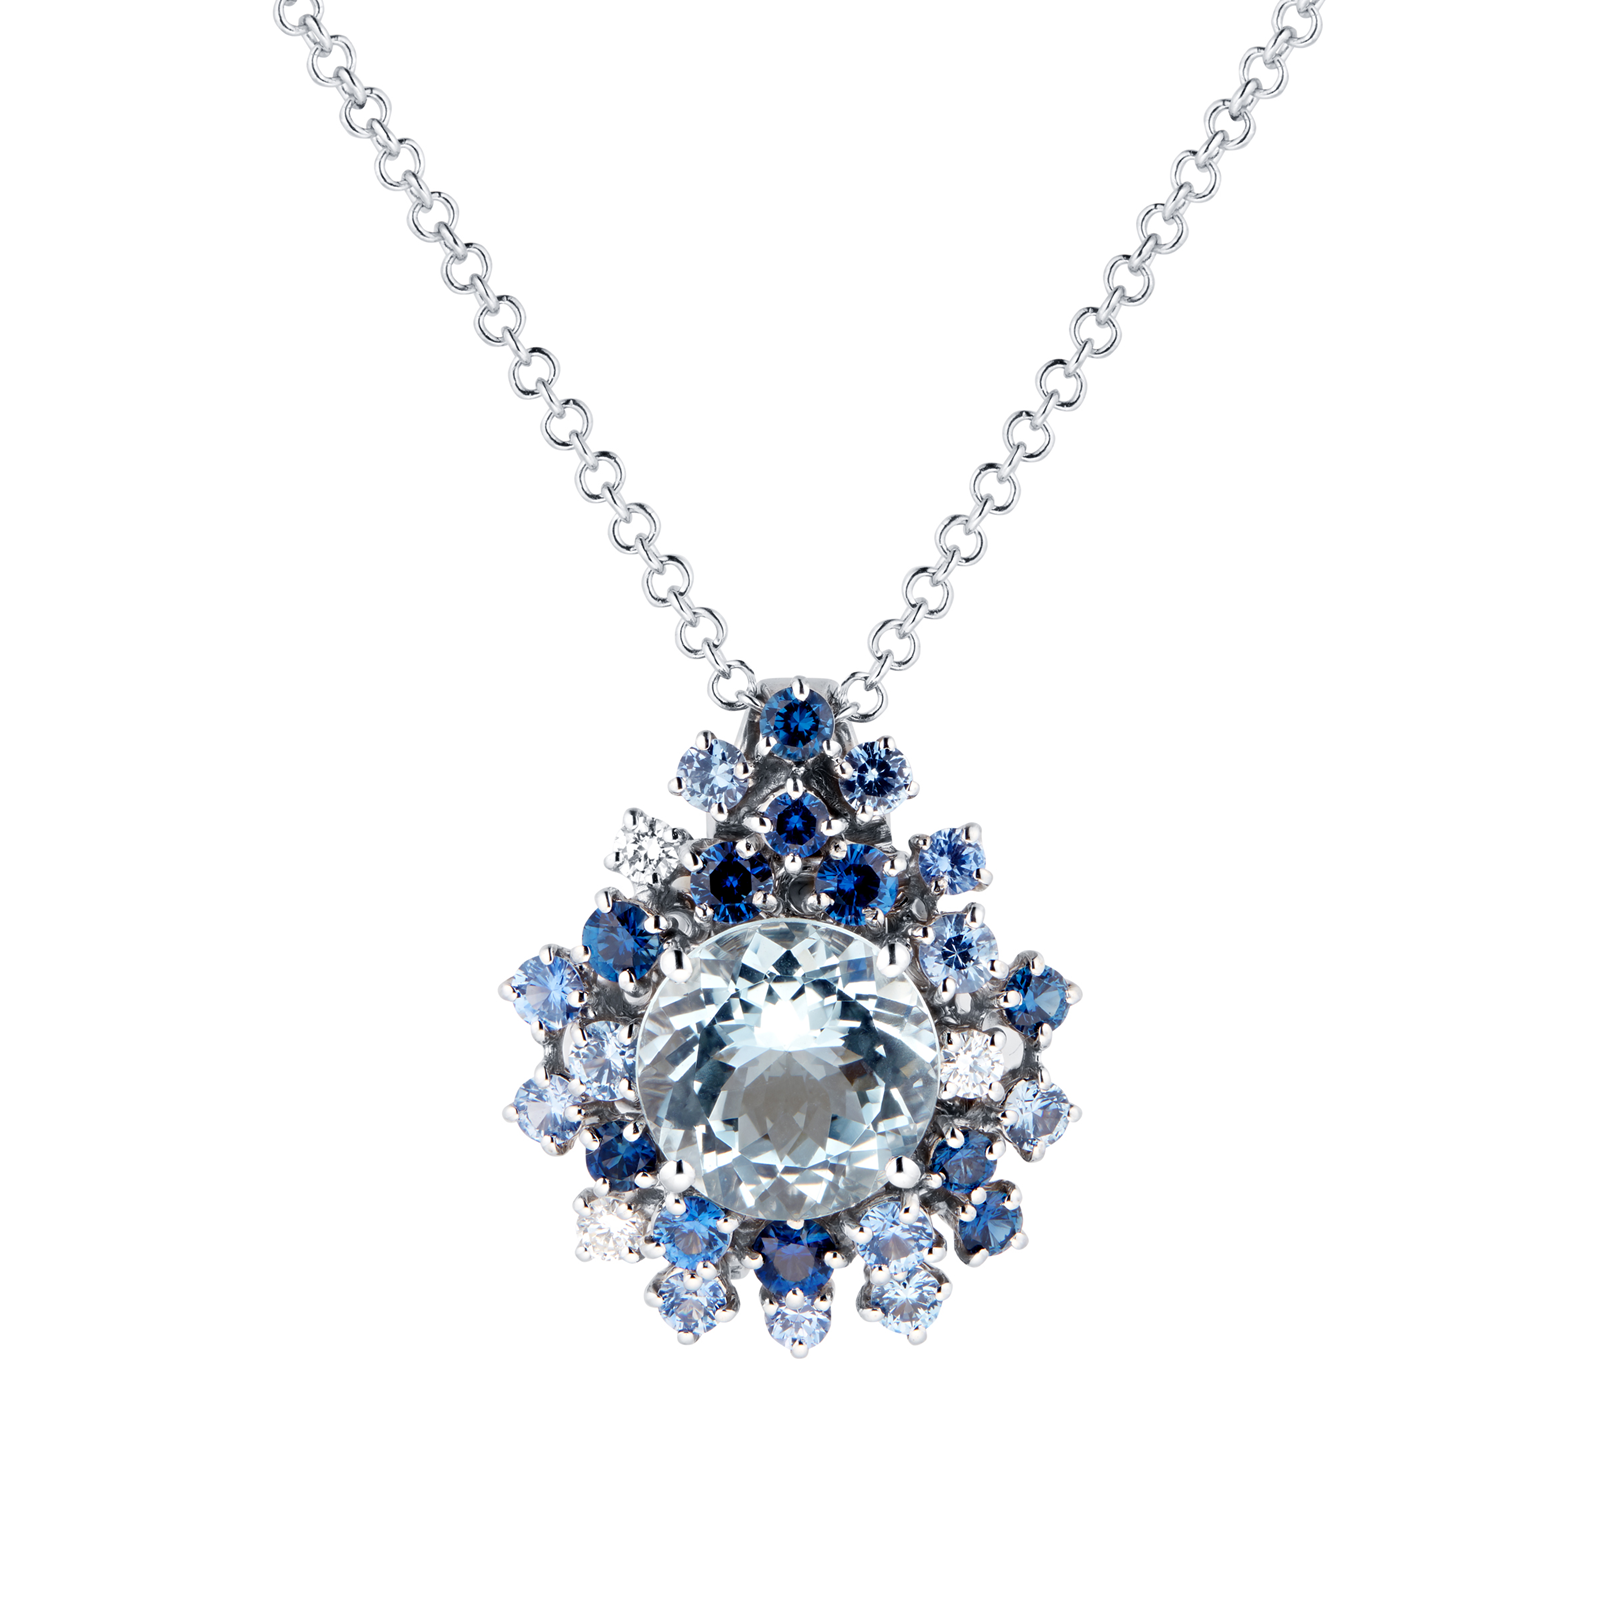 Damiani Anima 18ct White Gold 0.10cttw Diamond Aquamarine and Sapphire